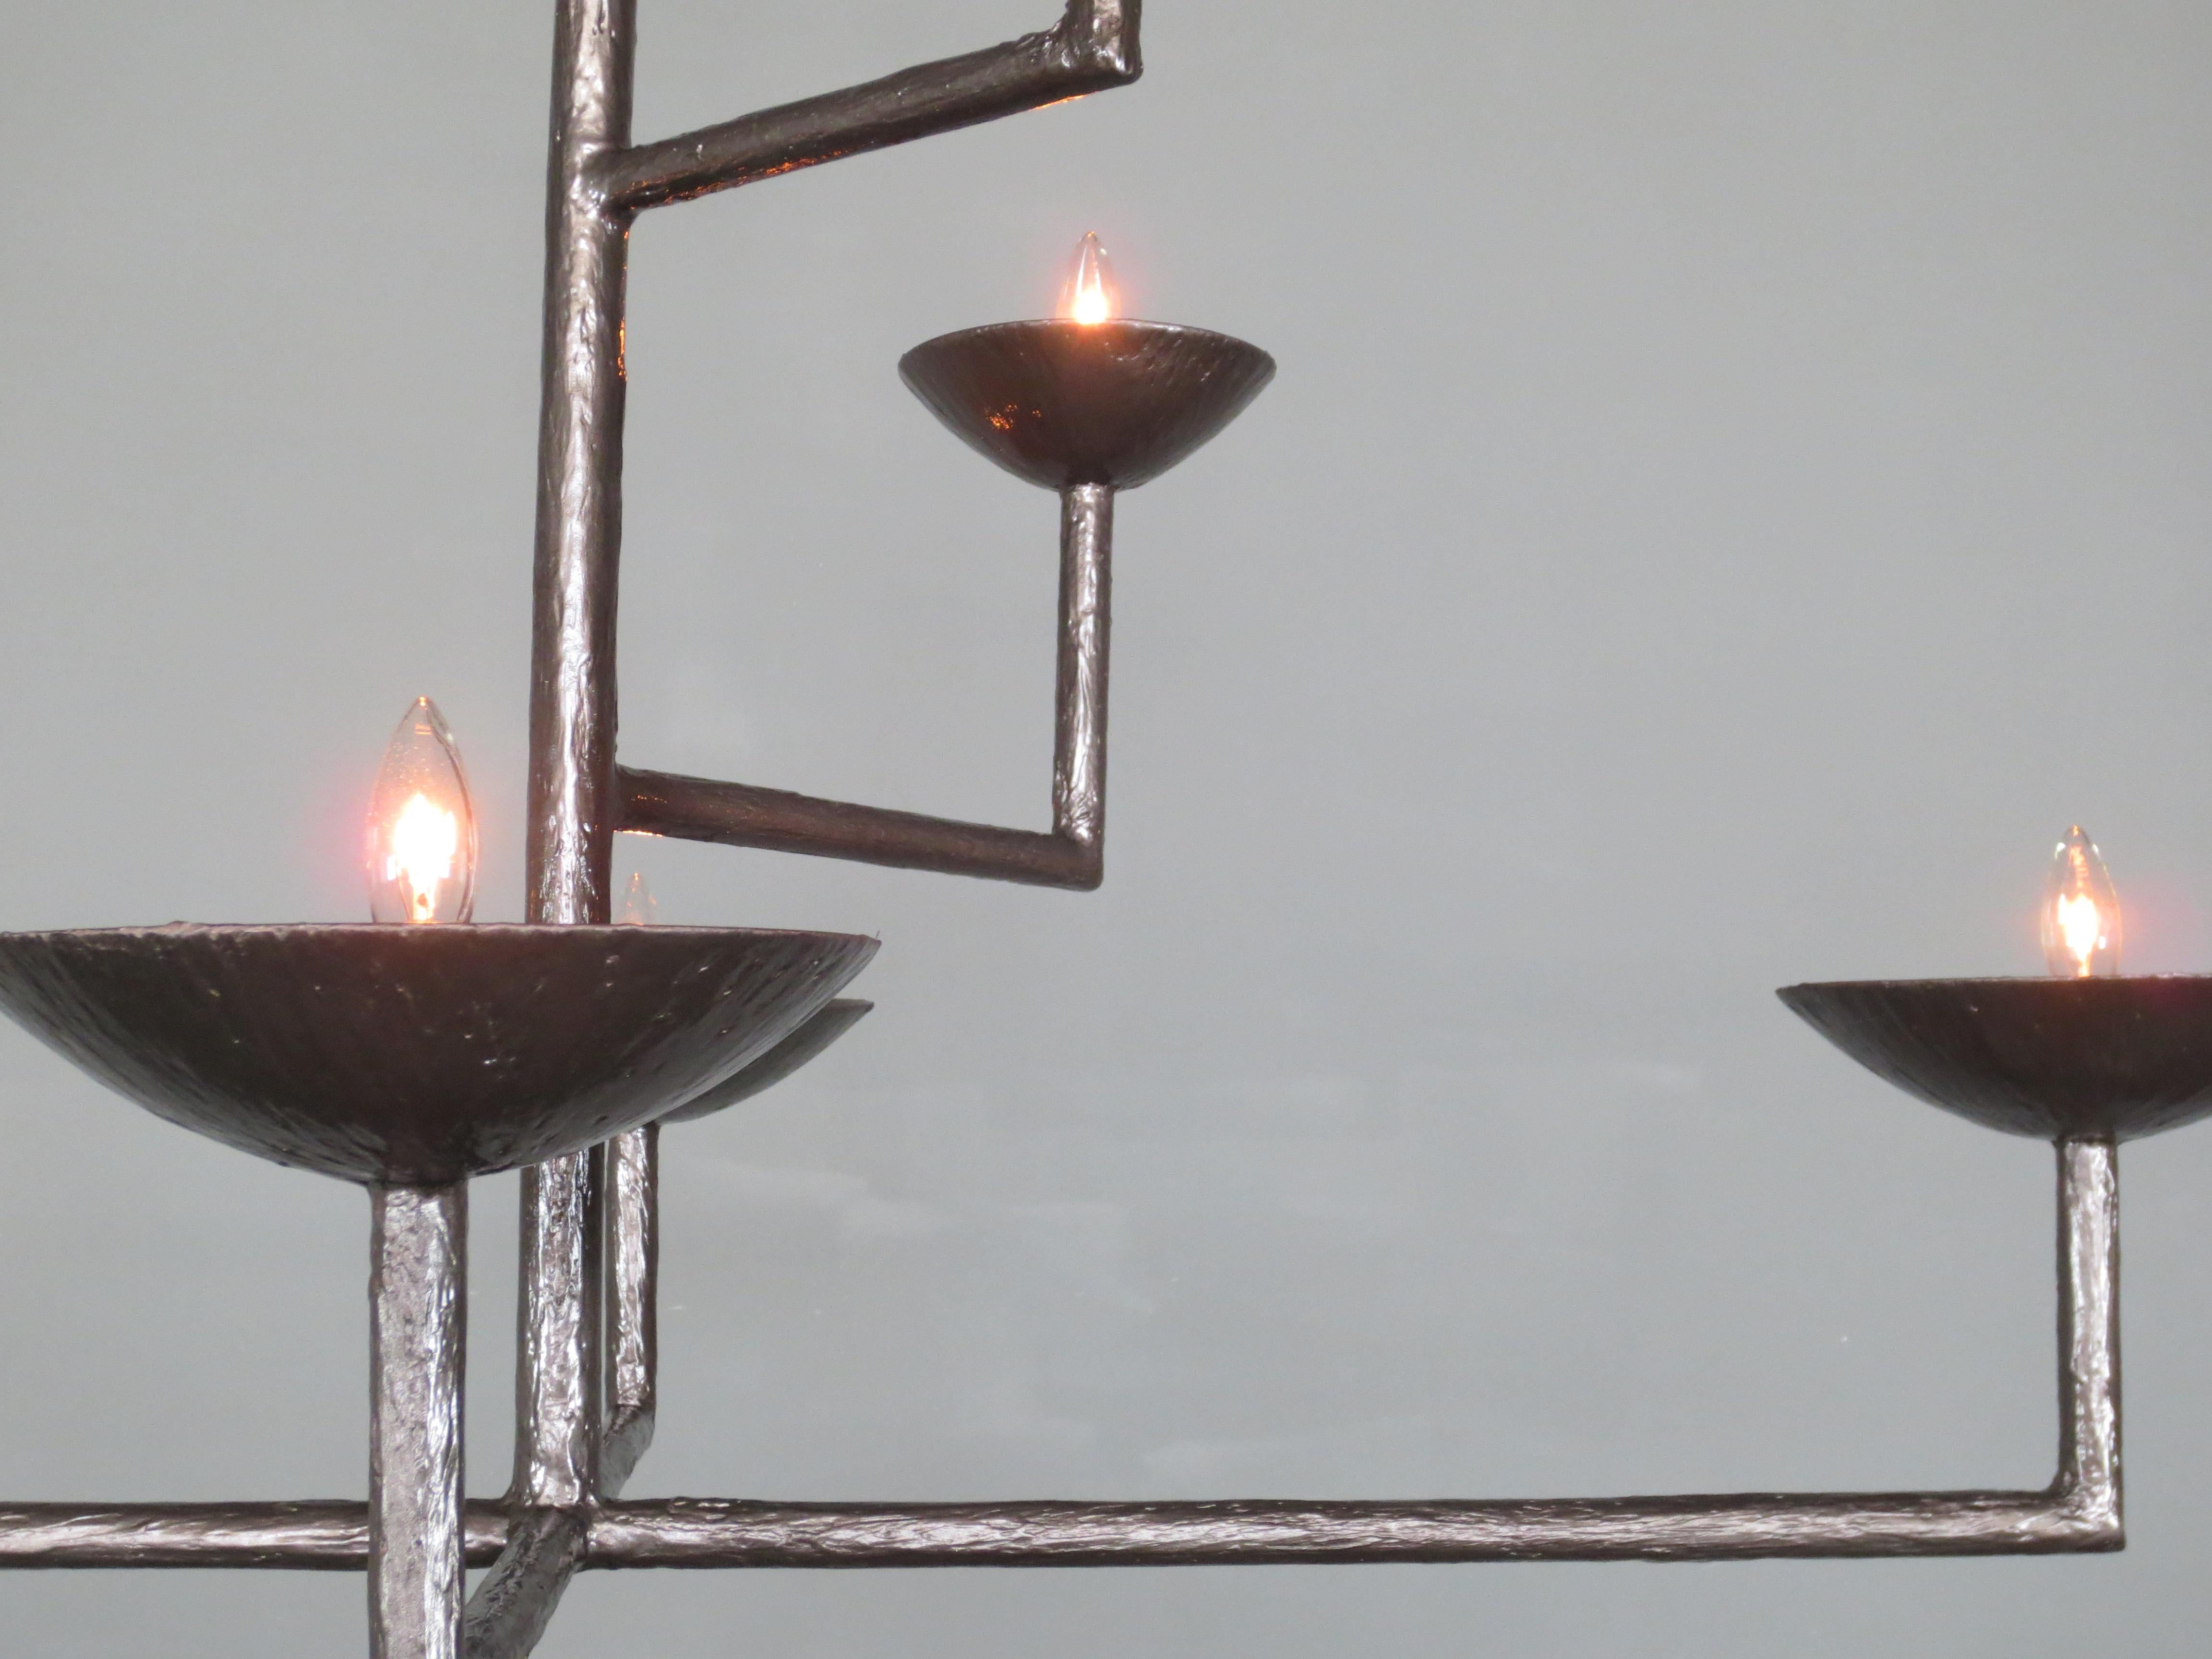 lustre en plâtre de 7 tasses en finition bronze avec demi-boule et chaîne par Tracey Garet de Apsara Interior Design
Les 7 coupes de ce lustre se trouvent à différents niveaux. Chaque tasse contient une lumière de candélabre. La pièce présentée est